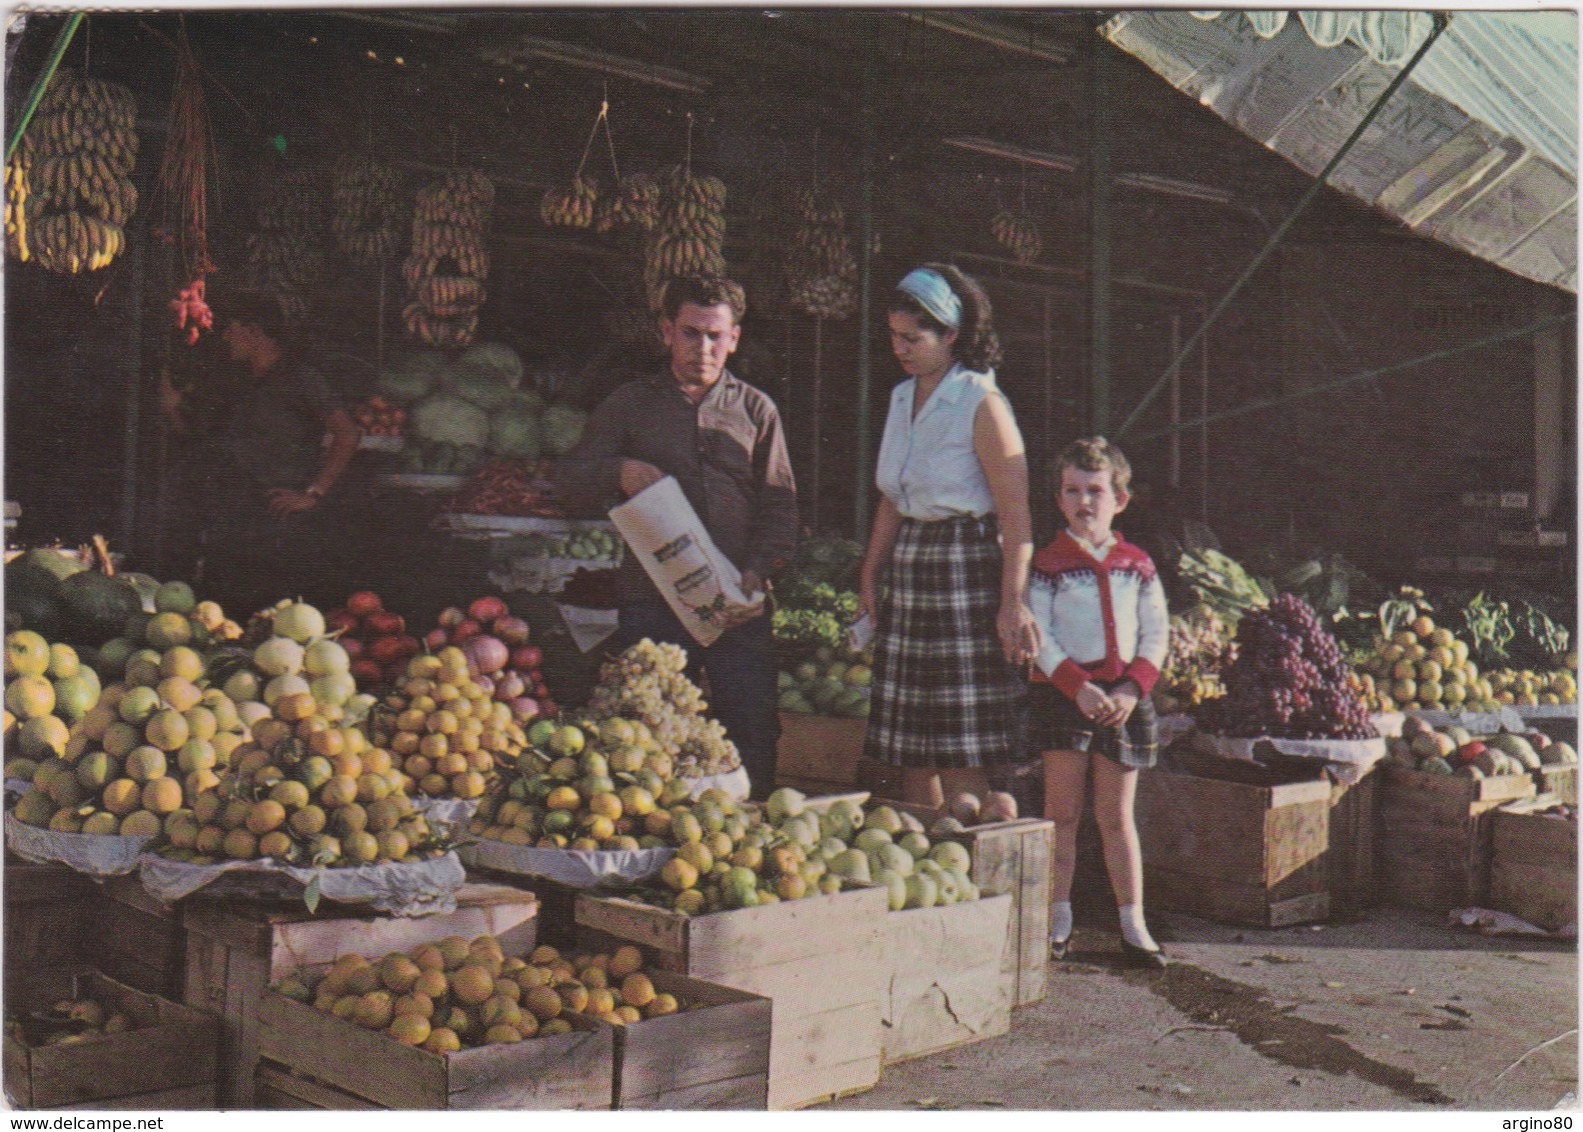 LIBAN LEBANON 1952 CARTE POSTALE - A FRUIT MARKET - BEIRUT MARCHE DES FRUITS - Lebanon